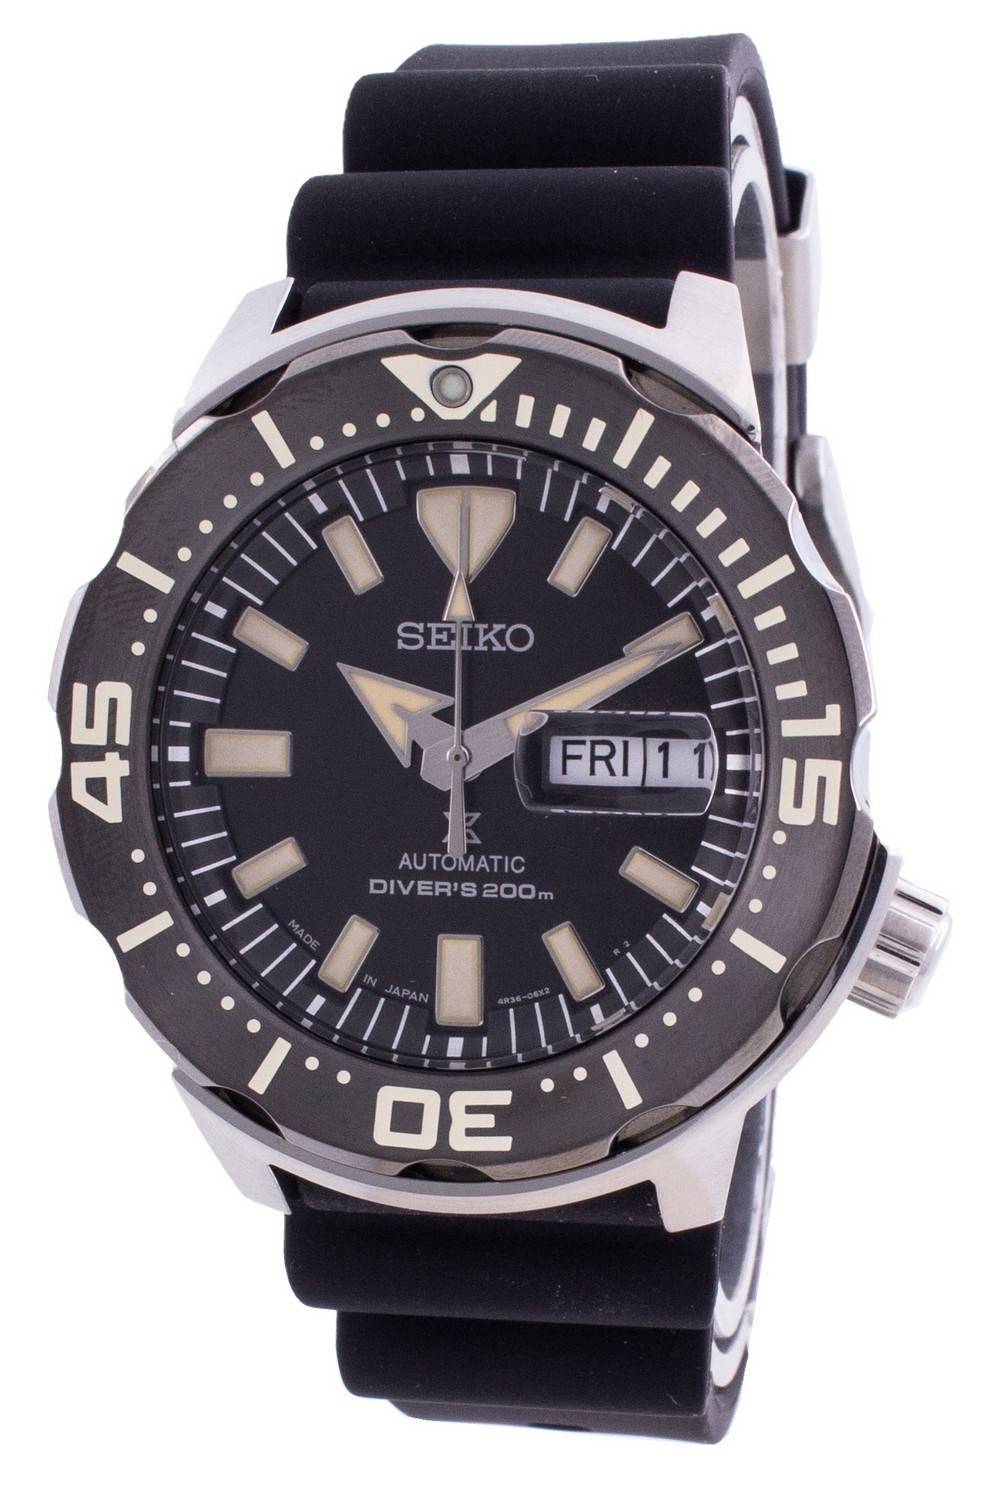 Seiko Prospex Automatic Diver's SRPD27 SRPD27J1 SRPD27J 200M Men's Watch